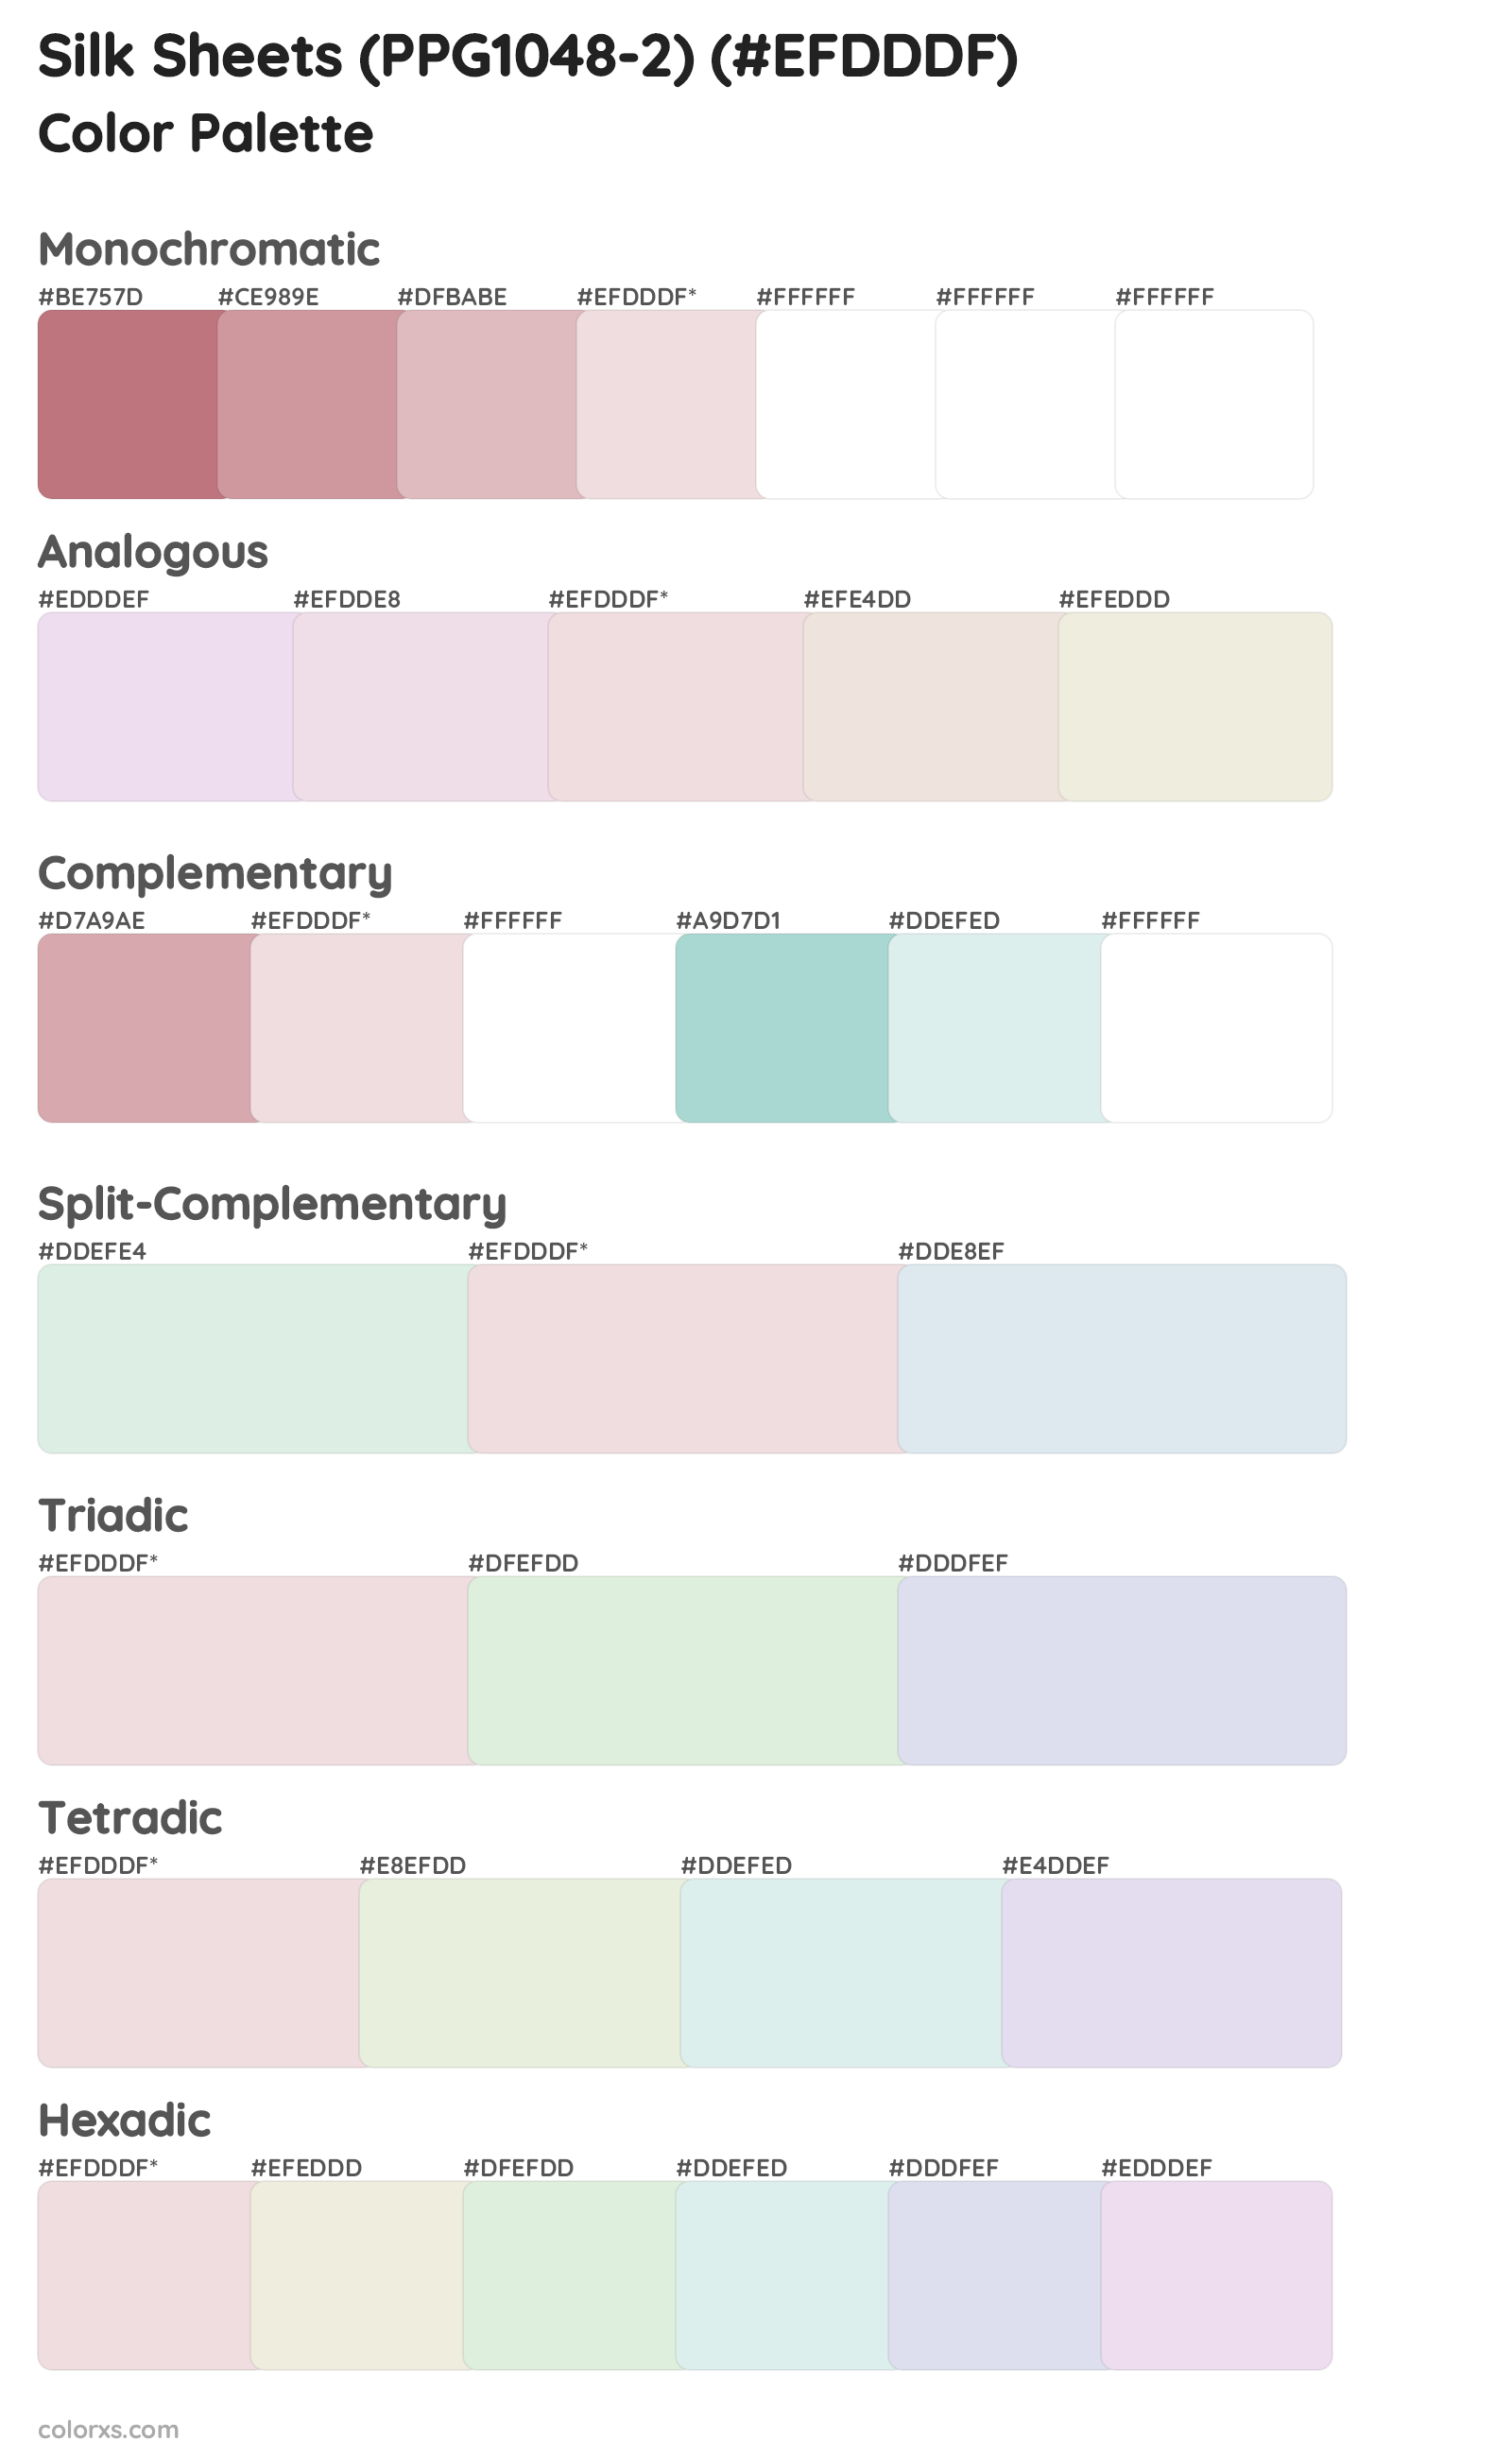 Silk Sheets (PPG1048-2) Color Scheme Palettes